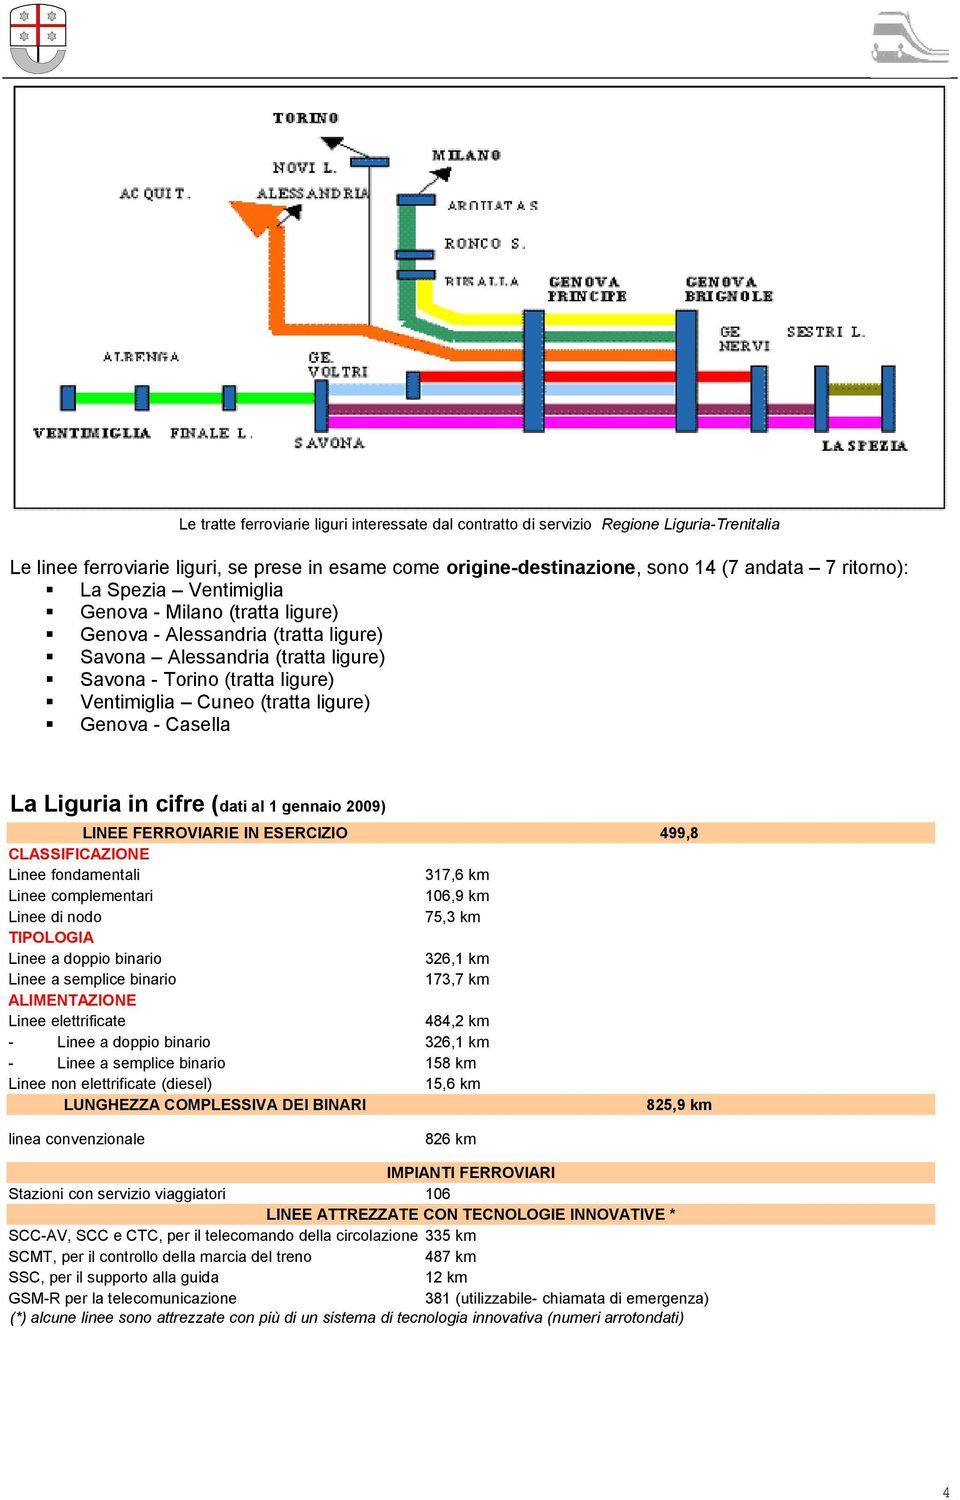 - Casella La Liguria in cifre (dati al 1 gennaio 2009) LINEE FERROVIARIE IN ESERCIZIO 499,8 CLASSIFICAZIONE Linee fondamentali 317,6 km Linee complementari 106,9 km Linee di nodo 75,3 km TIPOLOGIA